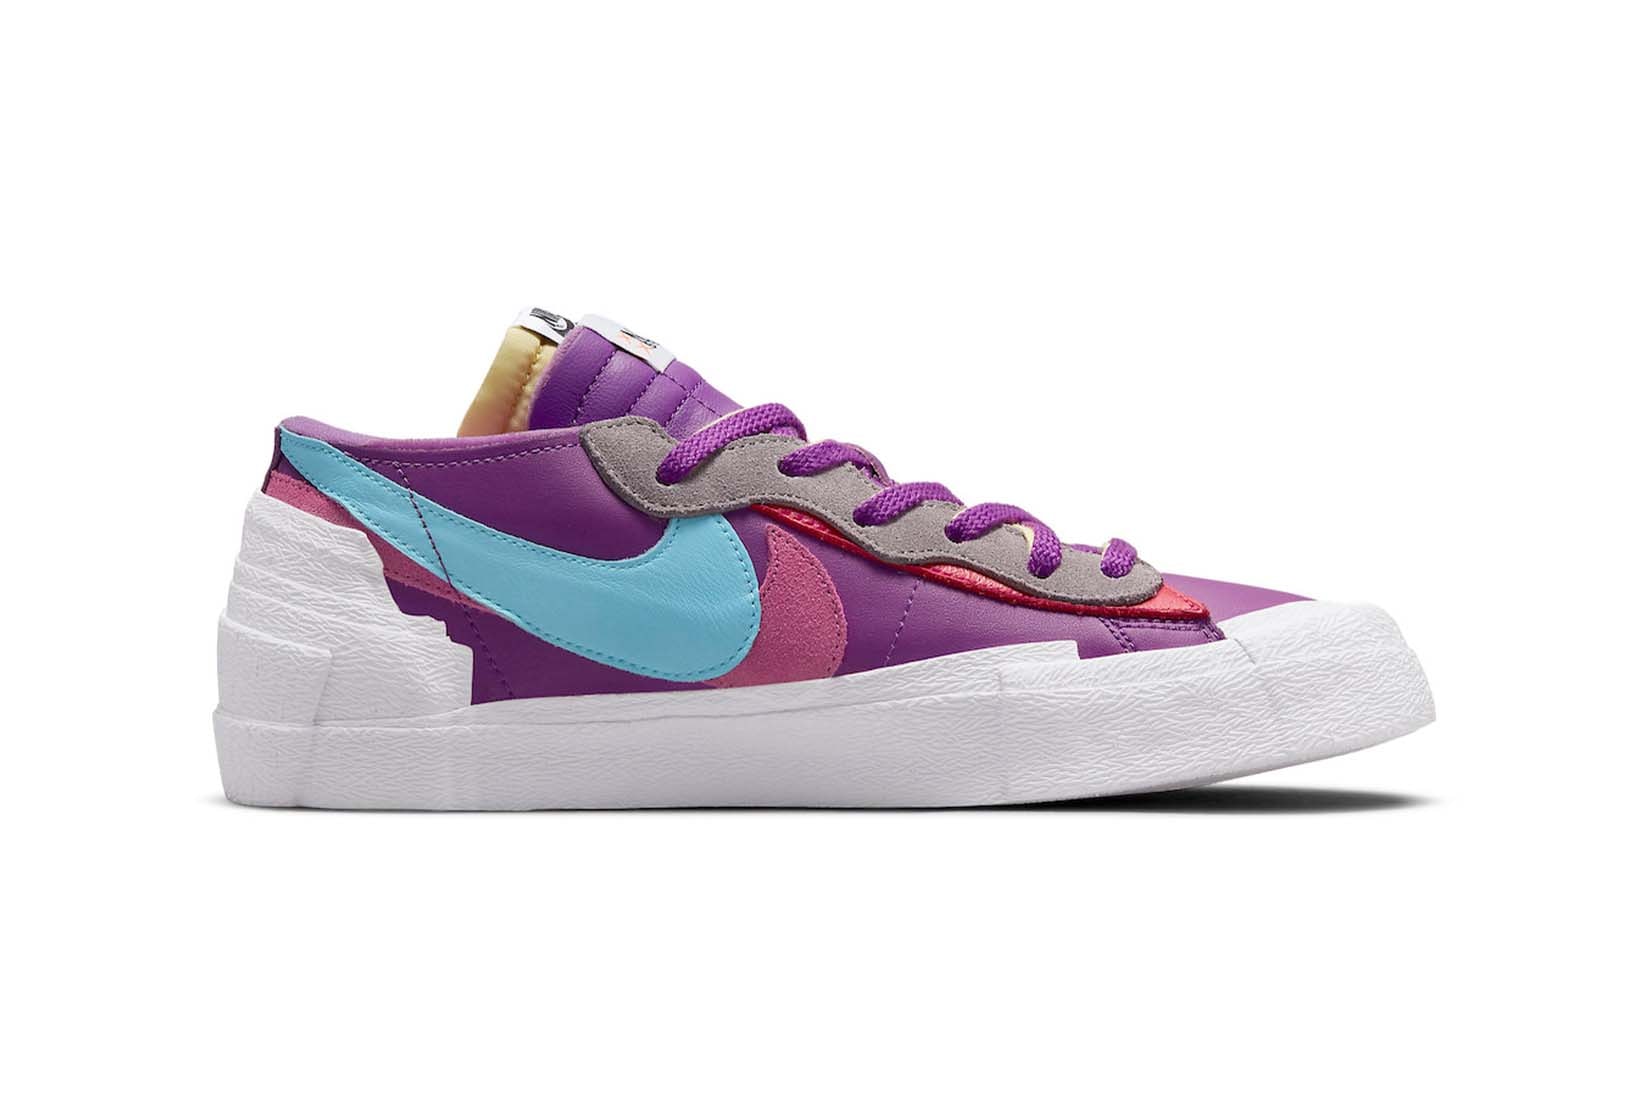 Nike x sacai x KAWS Blazer Low Purple Dusk Price Release Date Collaboration